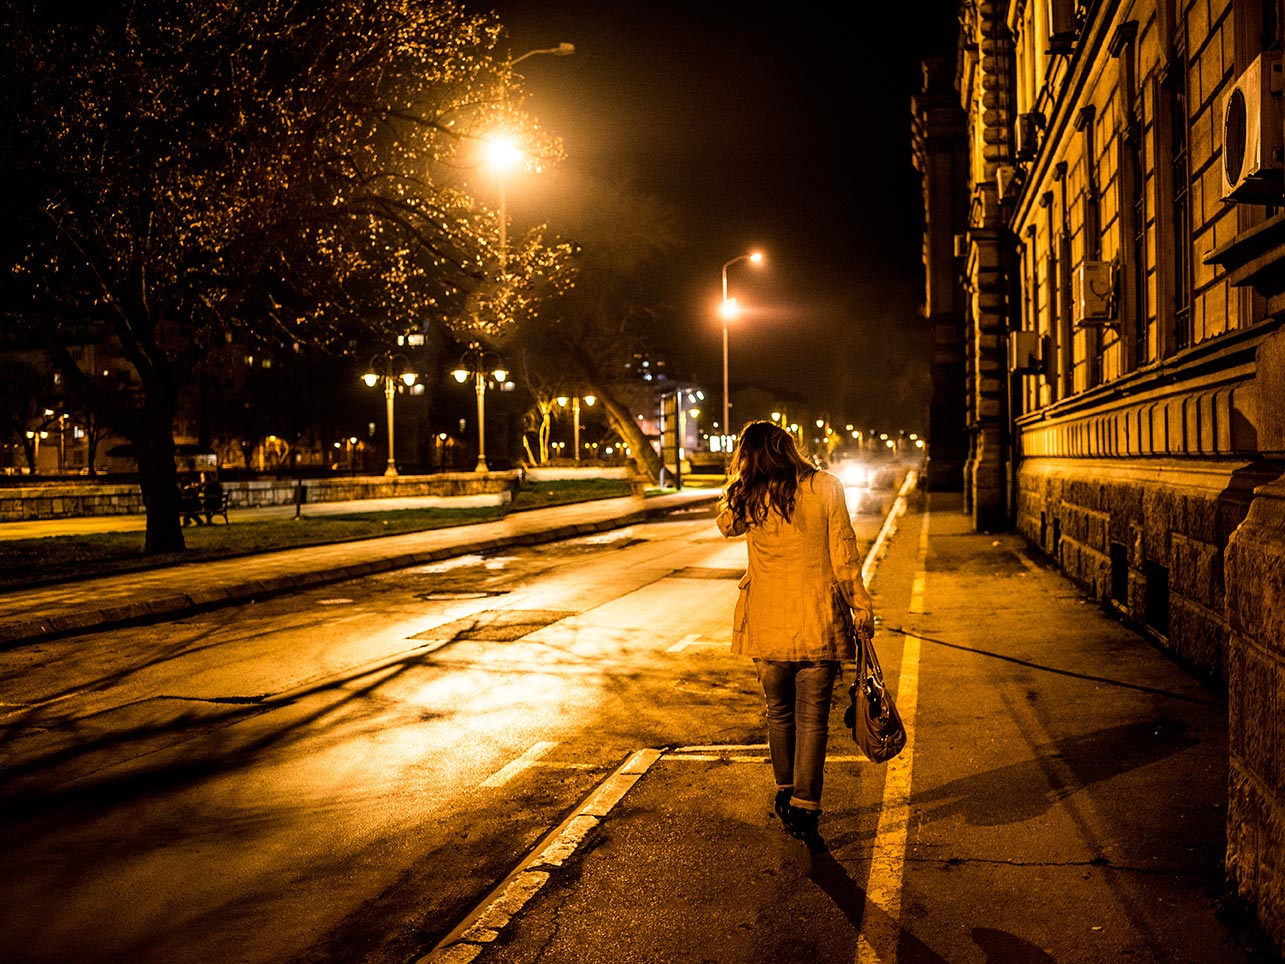 Прогулка по ночному городу